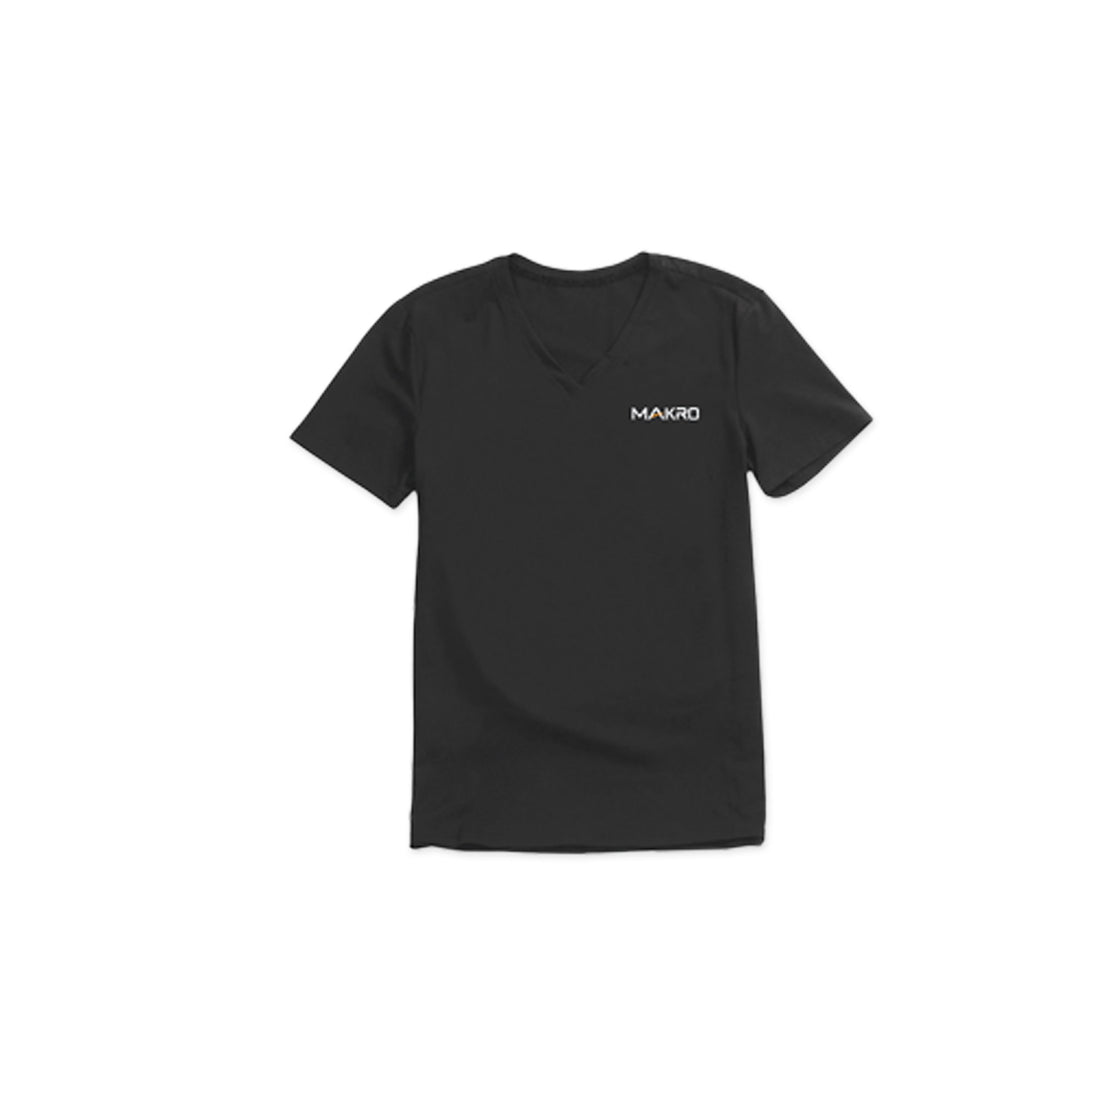 Makro T-Shirt with Official Makro Logo - Medium